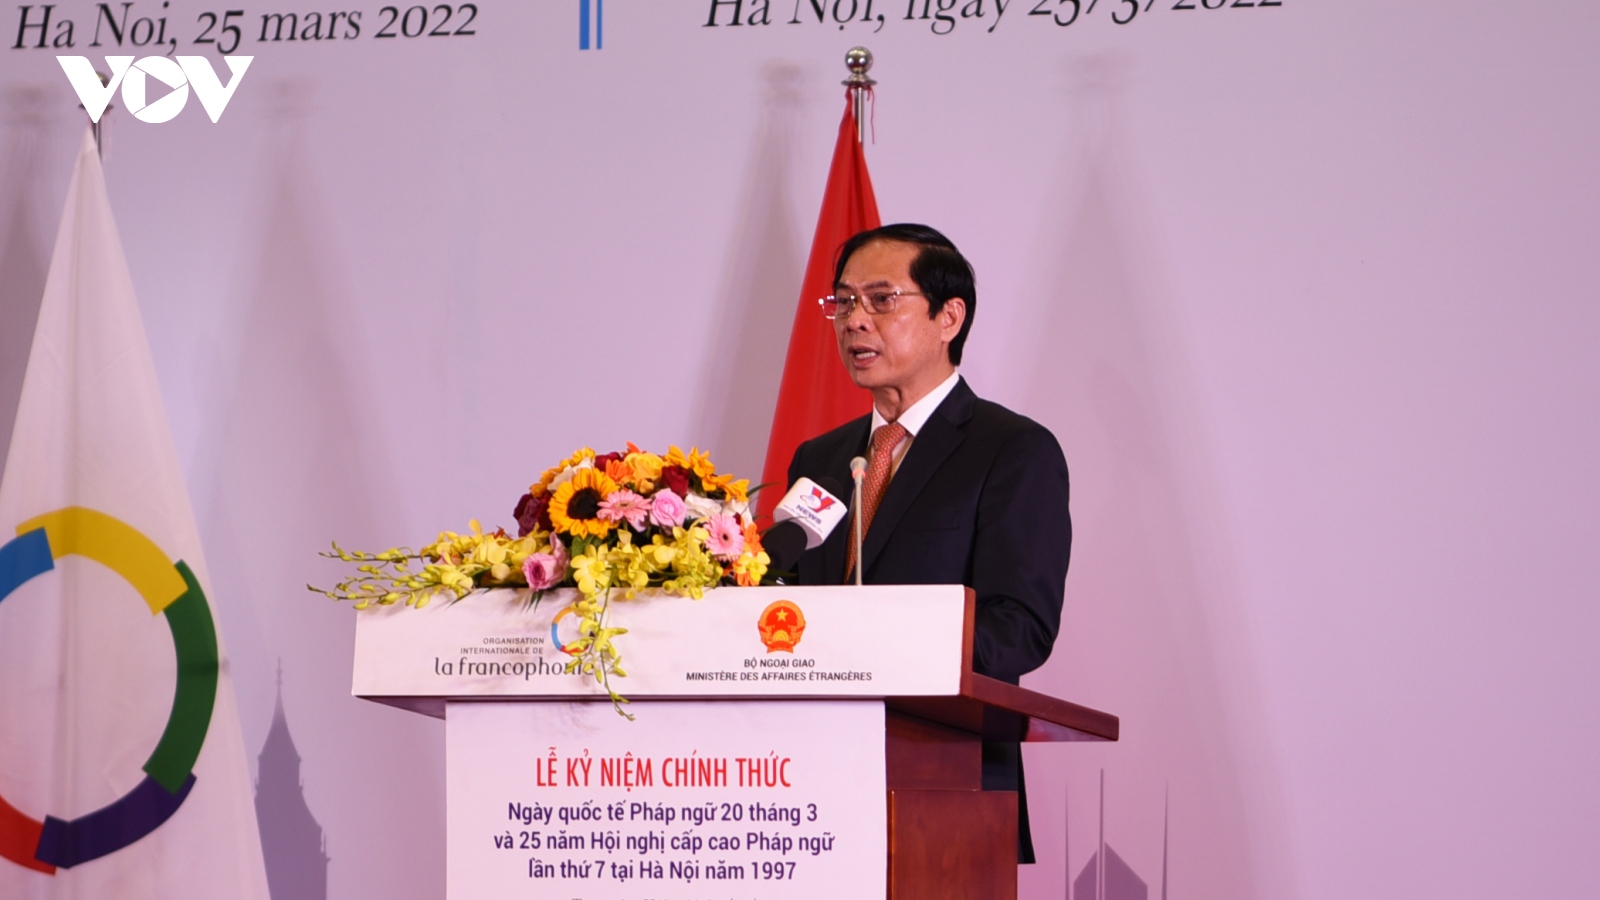 Kỷ niệm Ngày Quốc tế Pháp ngữ và 25 năm Việt Nam tổ chức Hội nghị cấp cao Pháp ngữ